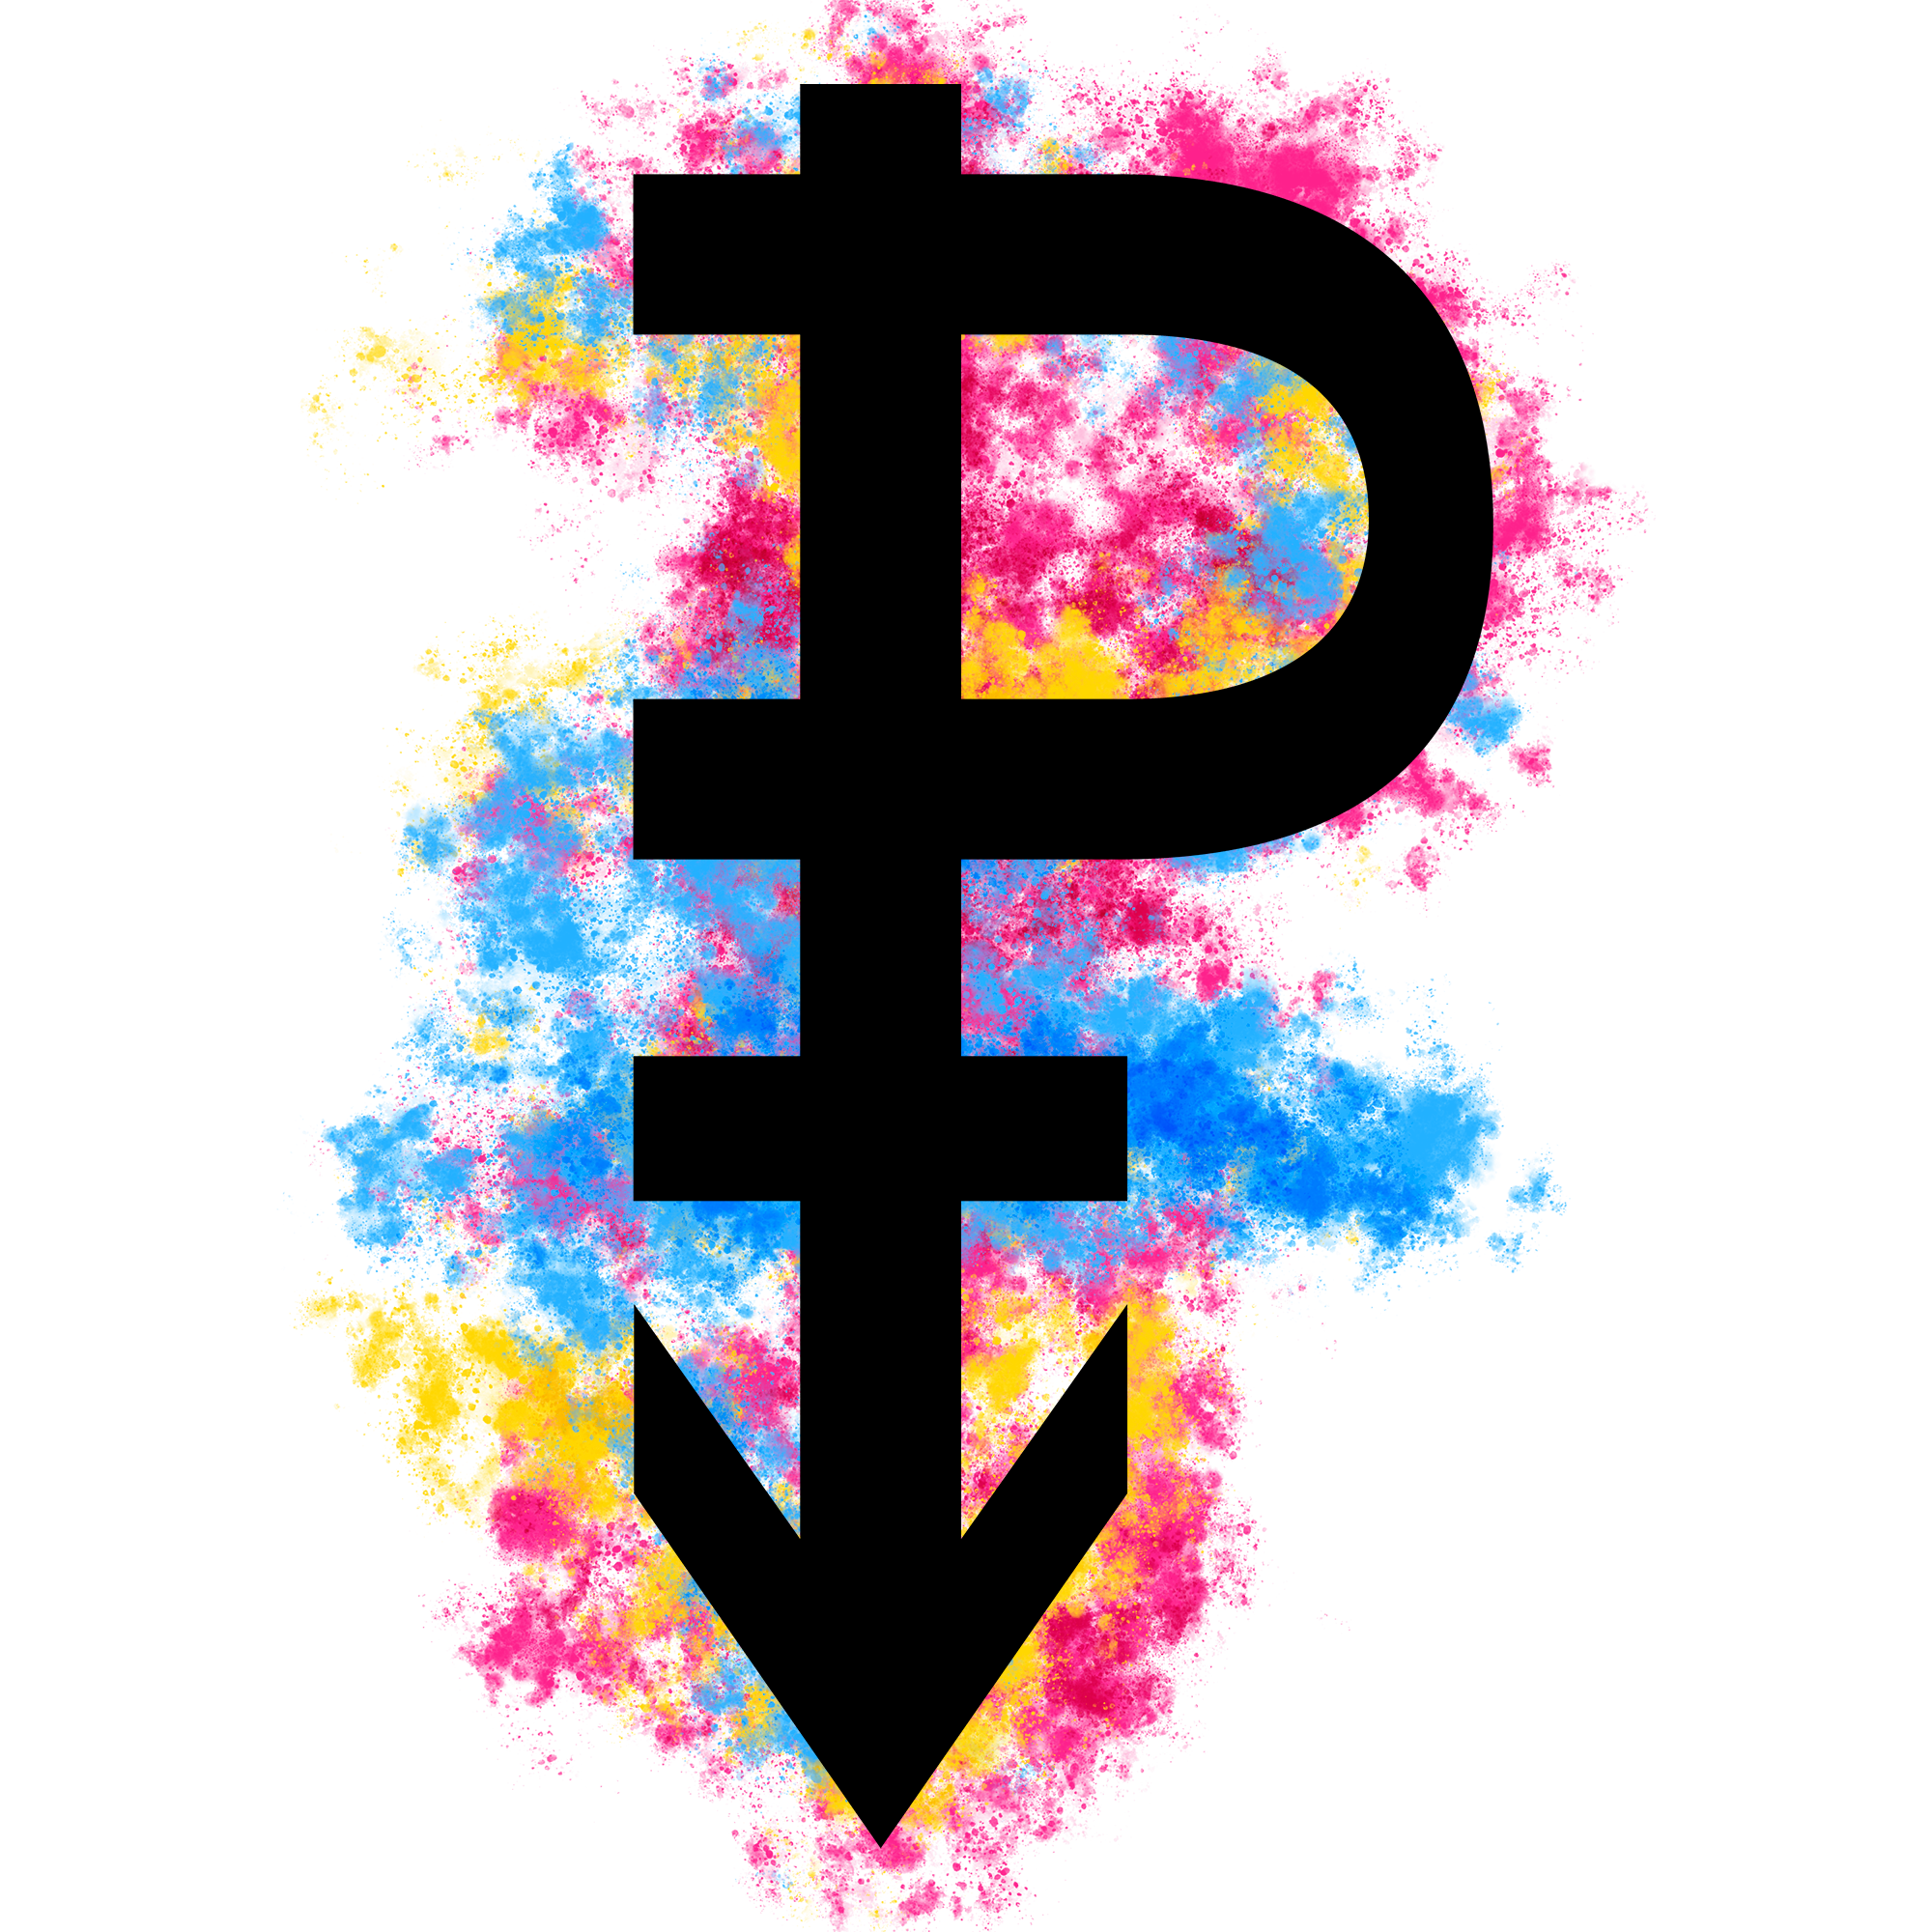 Símbolo composto por uma flecha para baixo cruzada pelo que parece ser uma letra U de lado e por uma barra curta como a de um símbolo de Vênus, formando uma letra P estilizada, na frente de manchas nas cores rosa, amarela e azul.